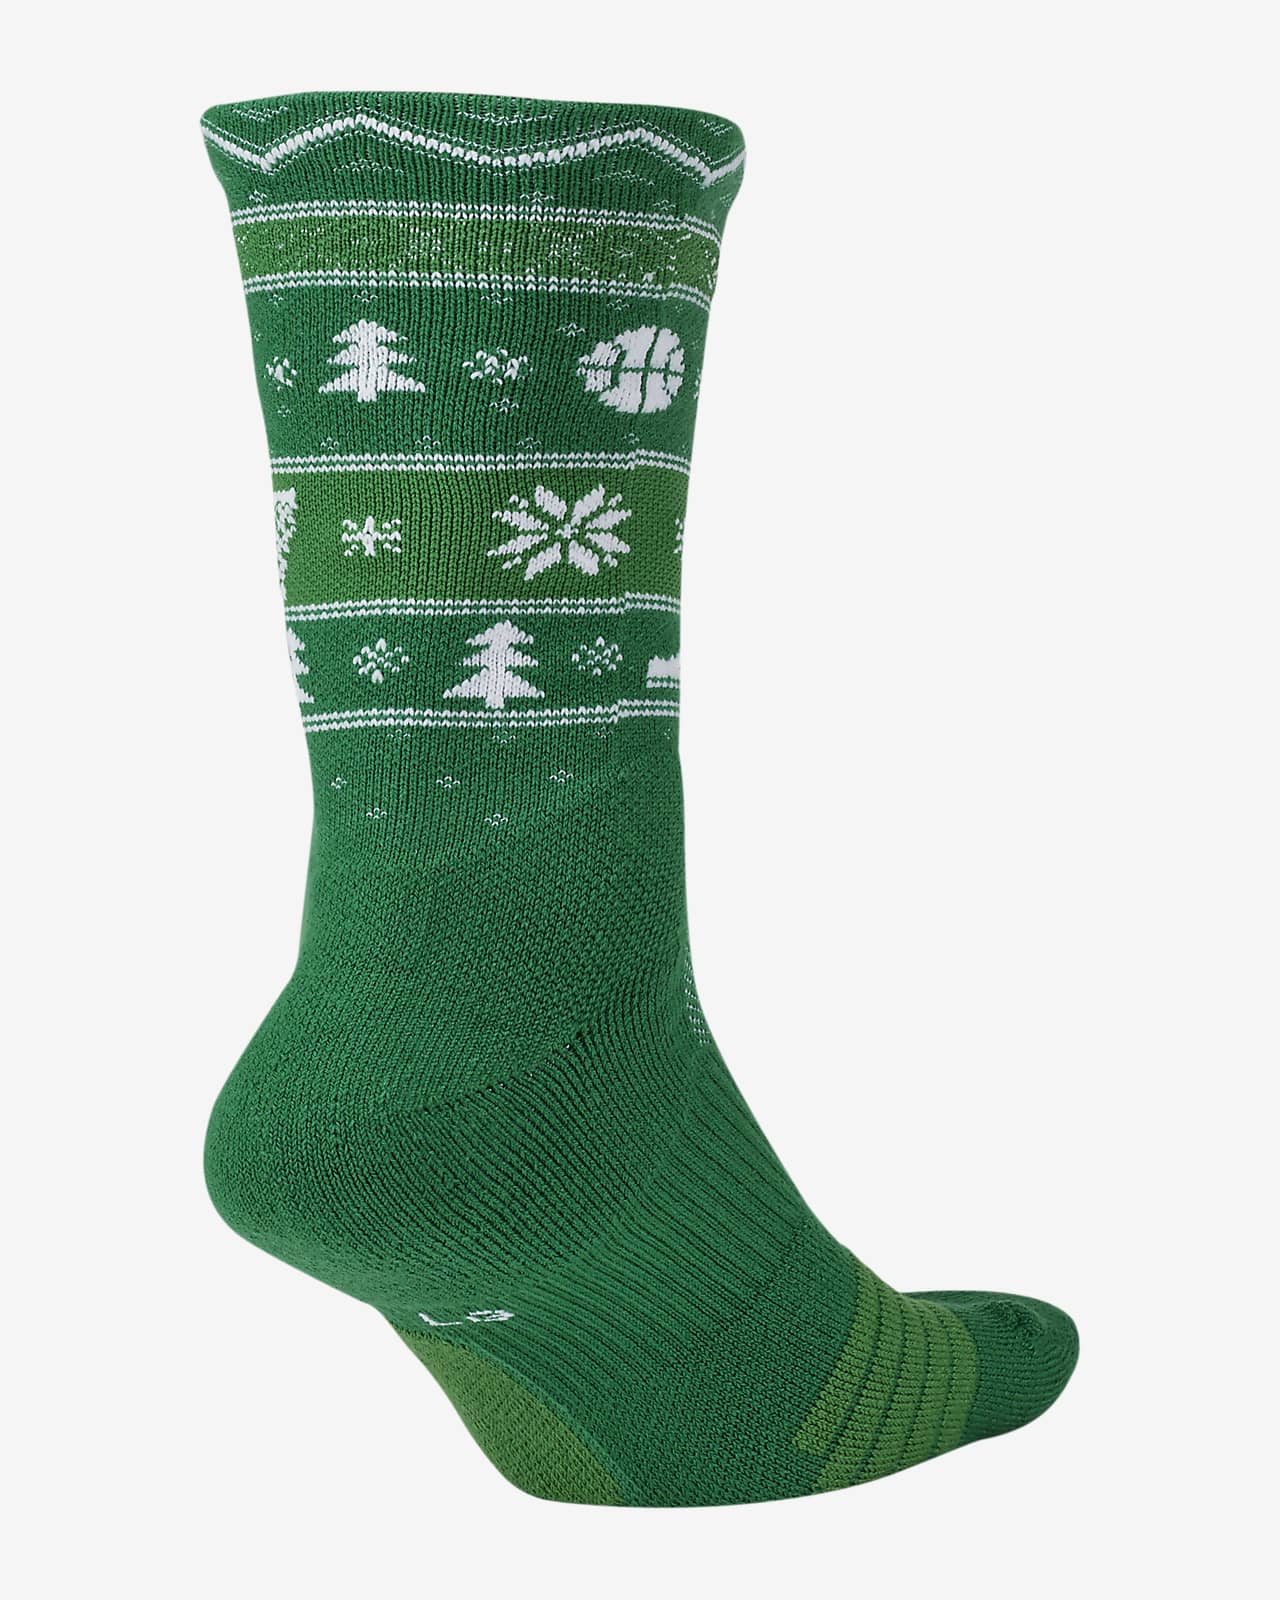 nike christmas socks 2019